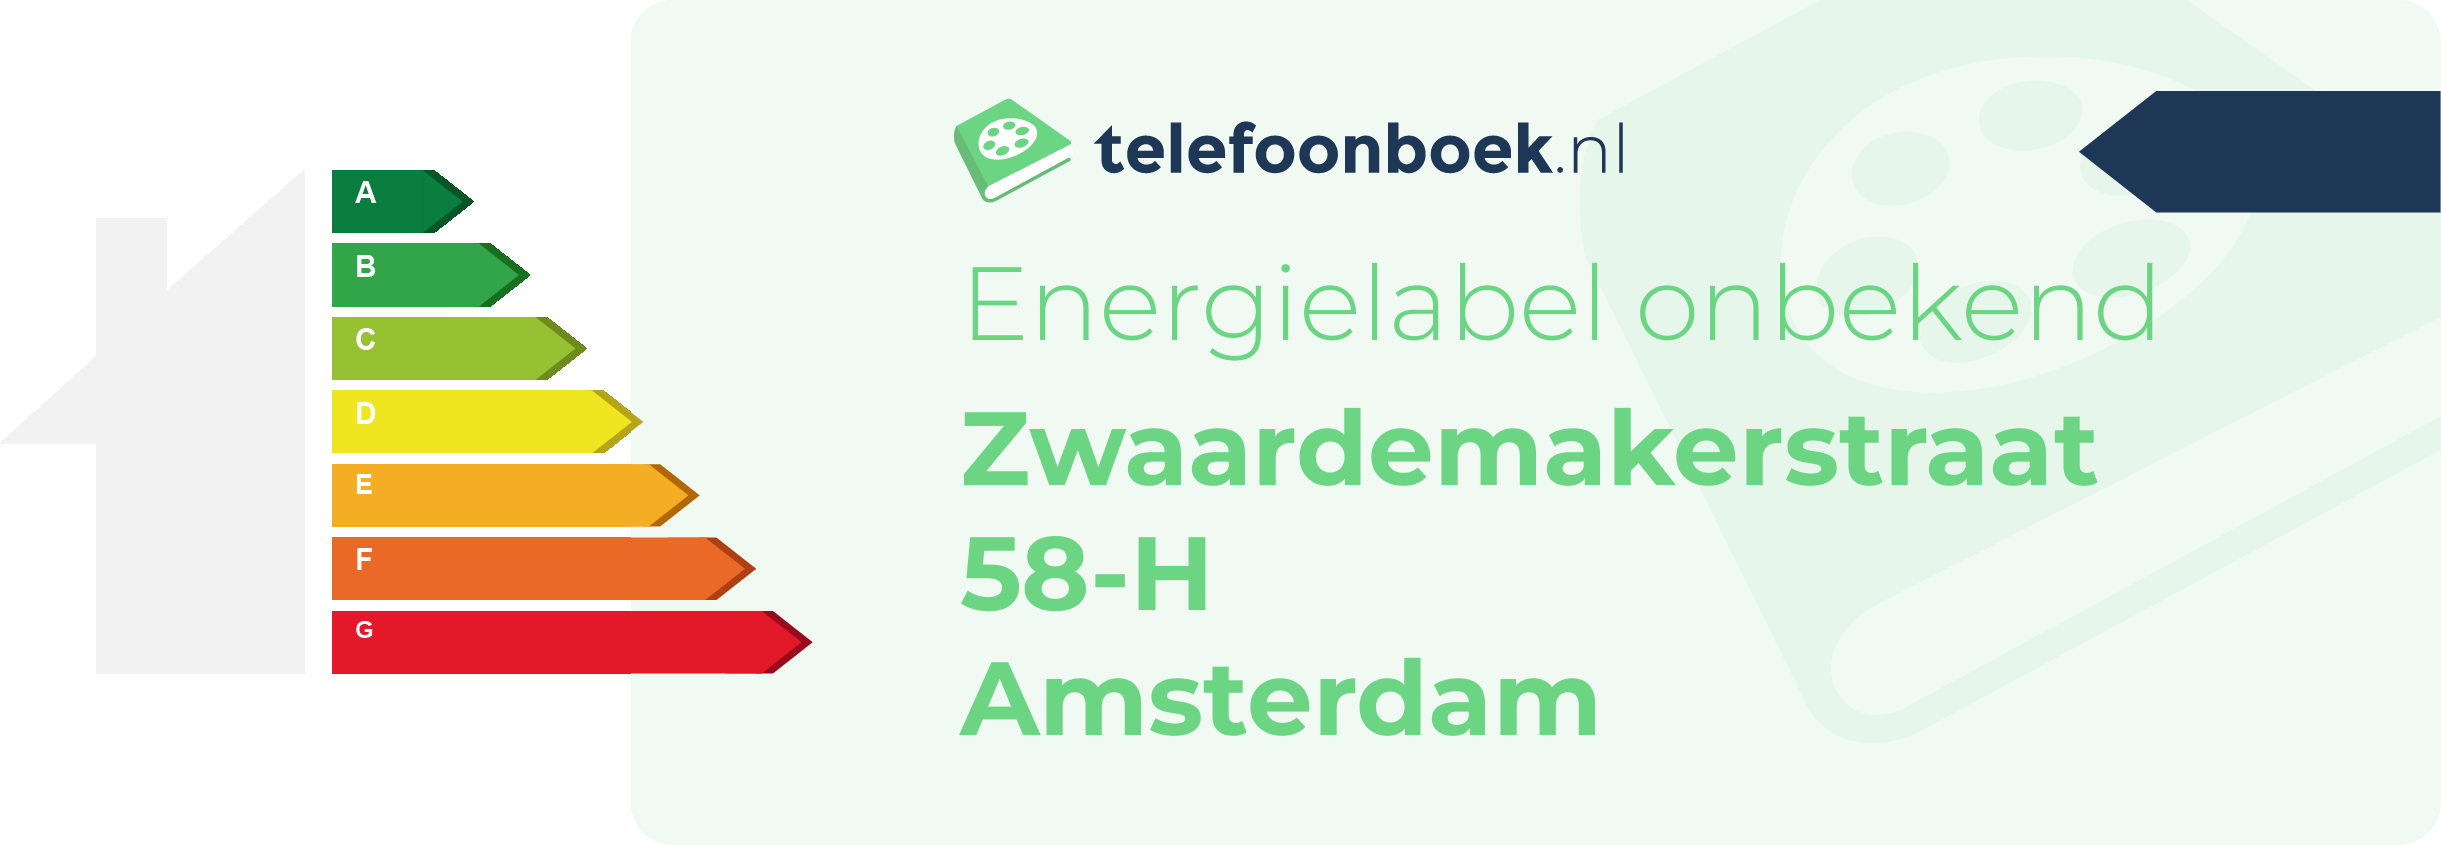 Energielabel Zwaardemakerstraat 58-H Amsterdam